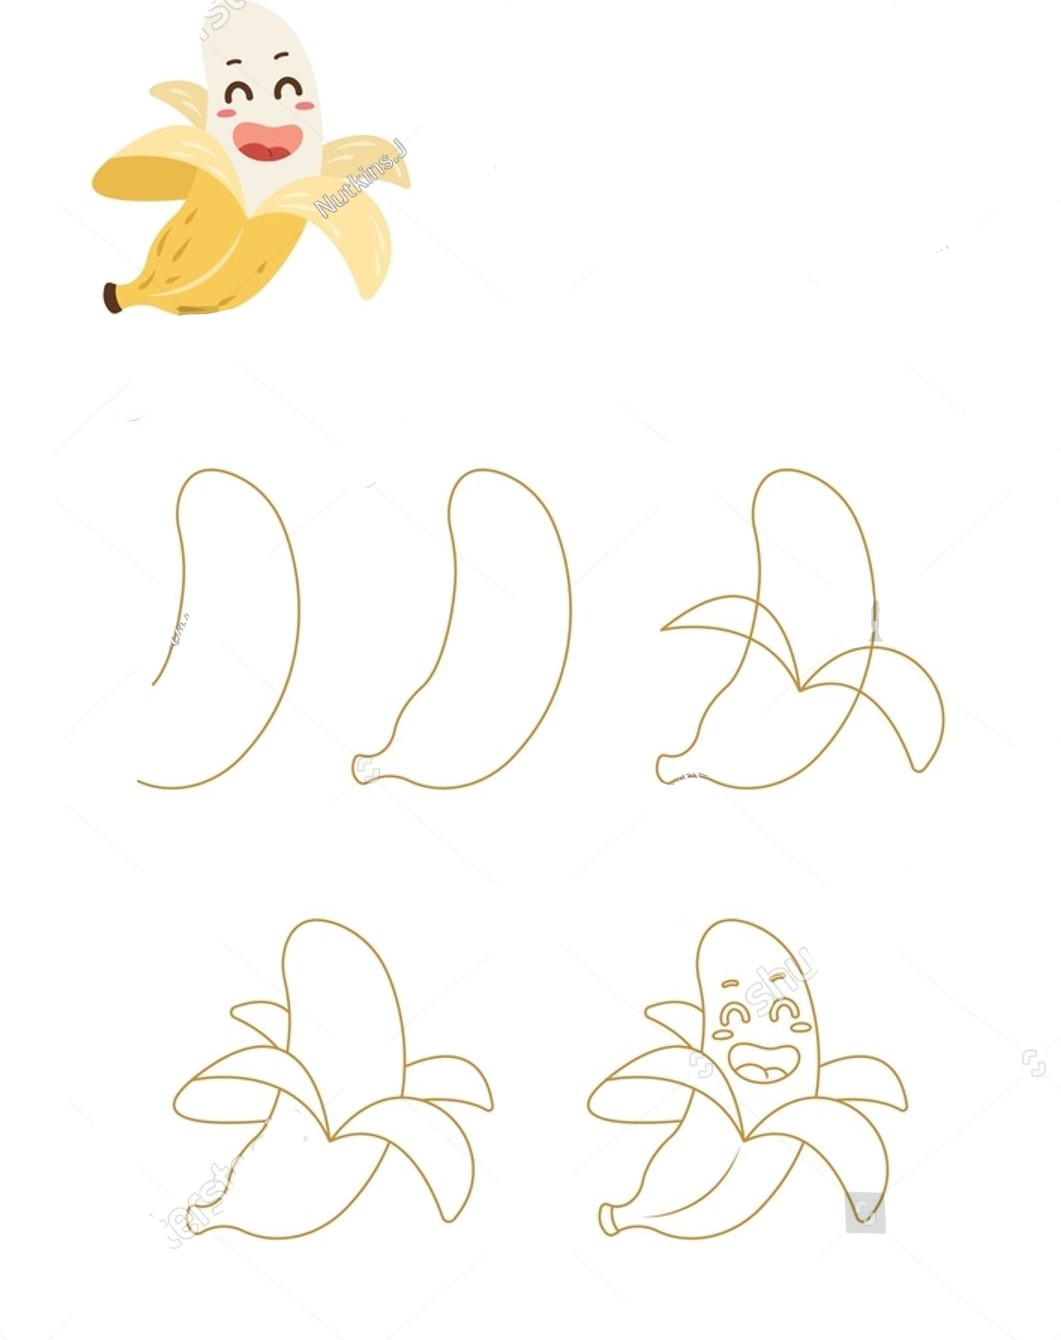 Bananenidee (12) zeichnen ideen